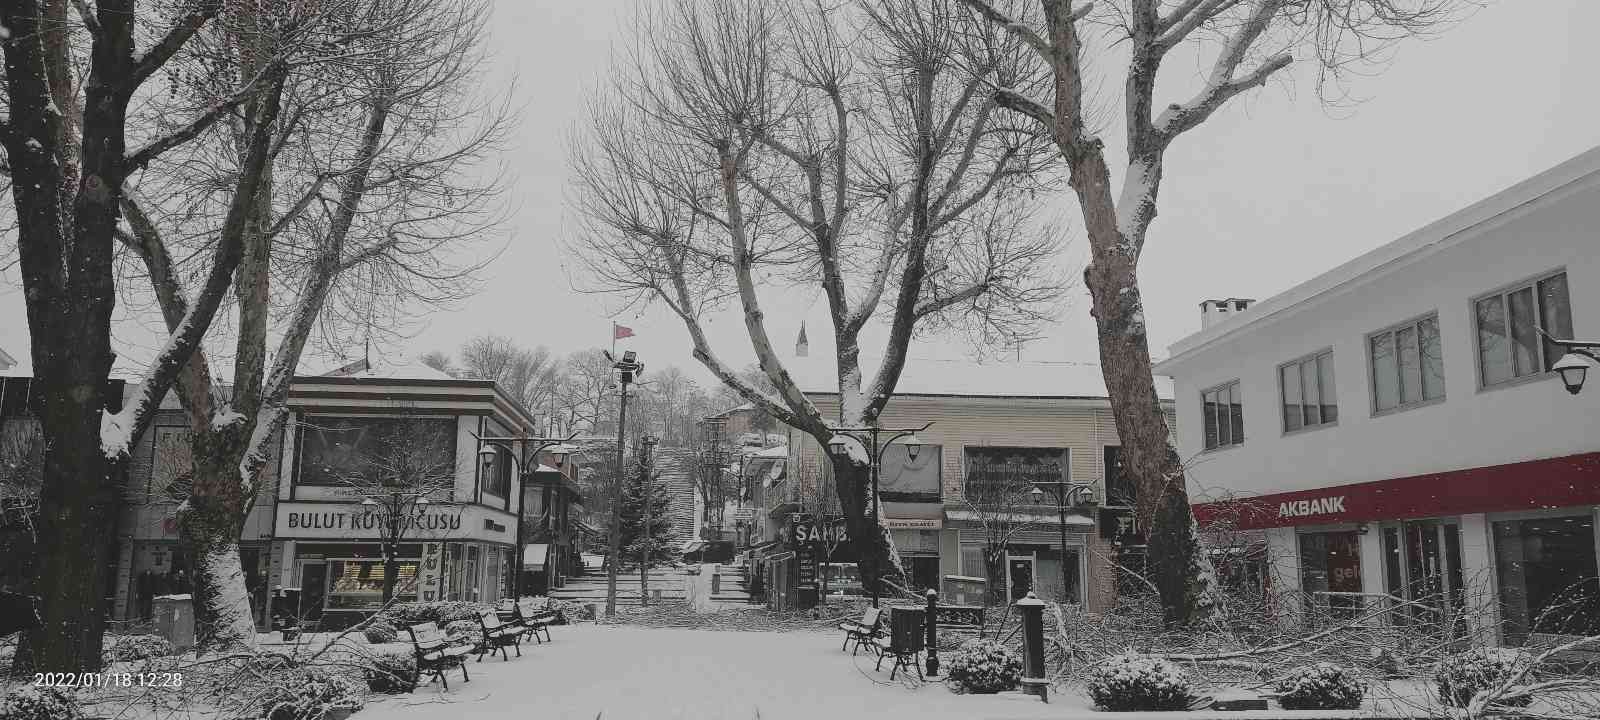 Kırşehir’de okullara kar engeli #kirsehir